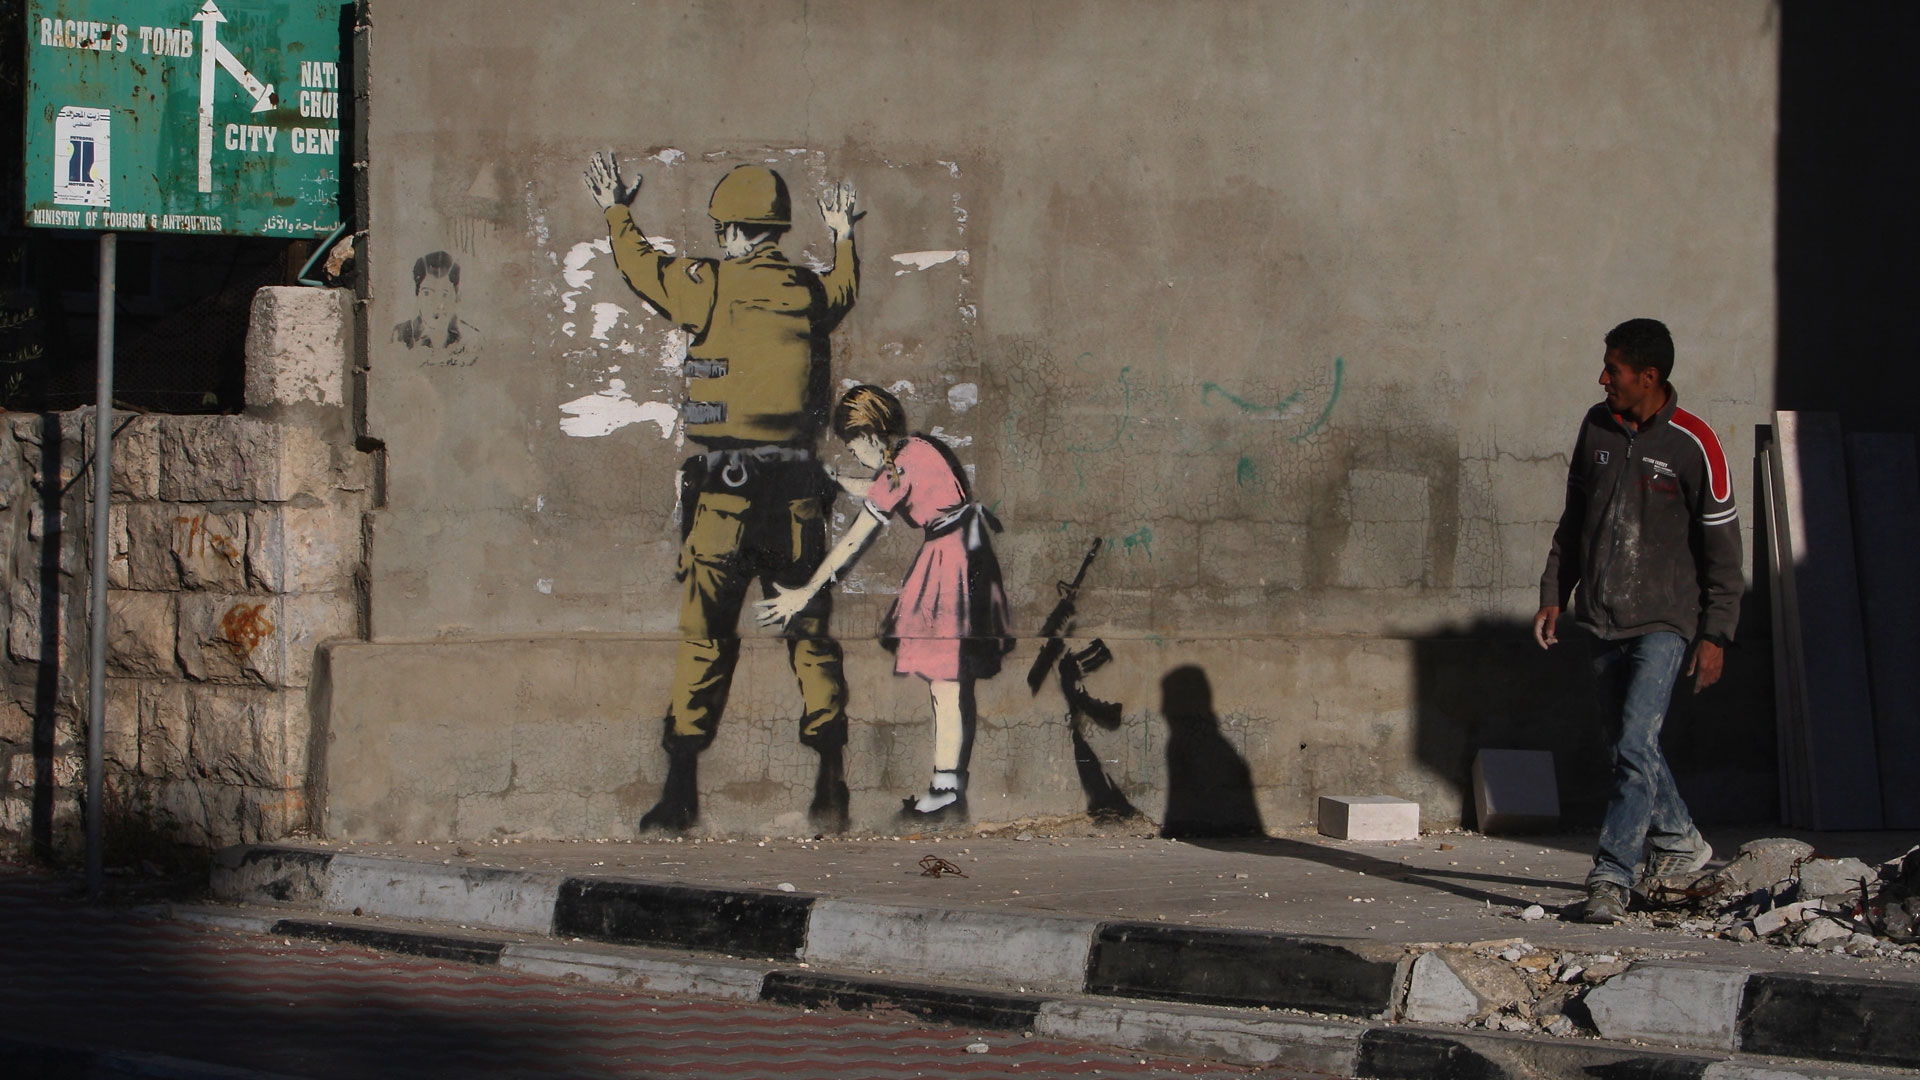 Le opere di Banksy